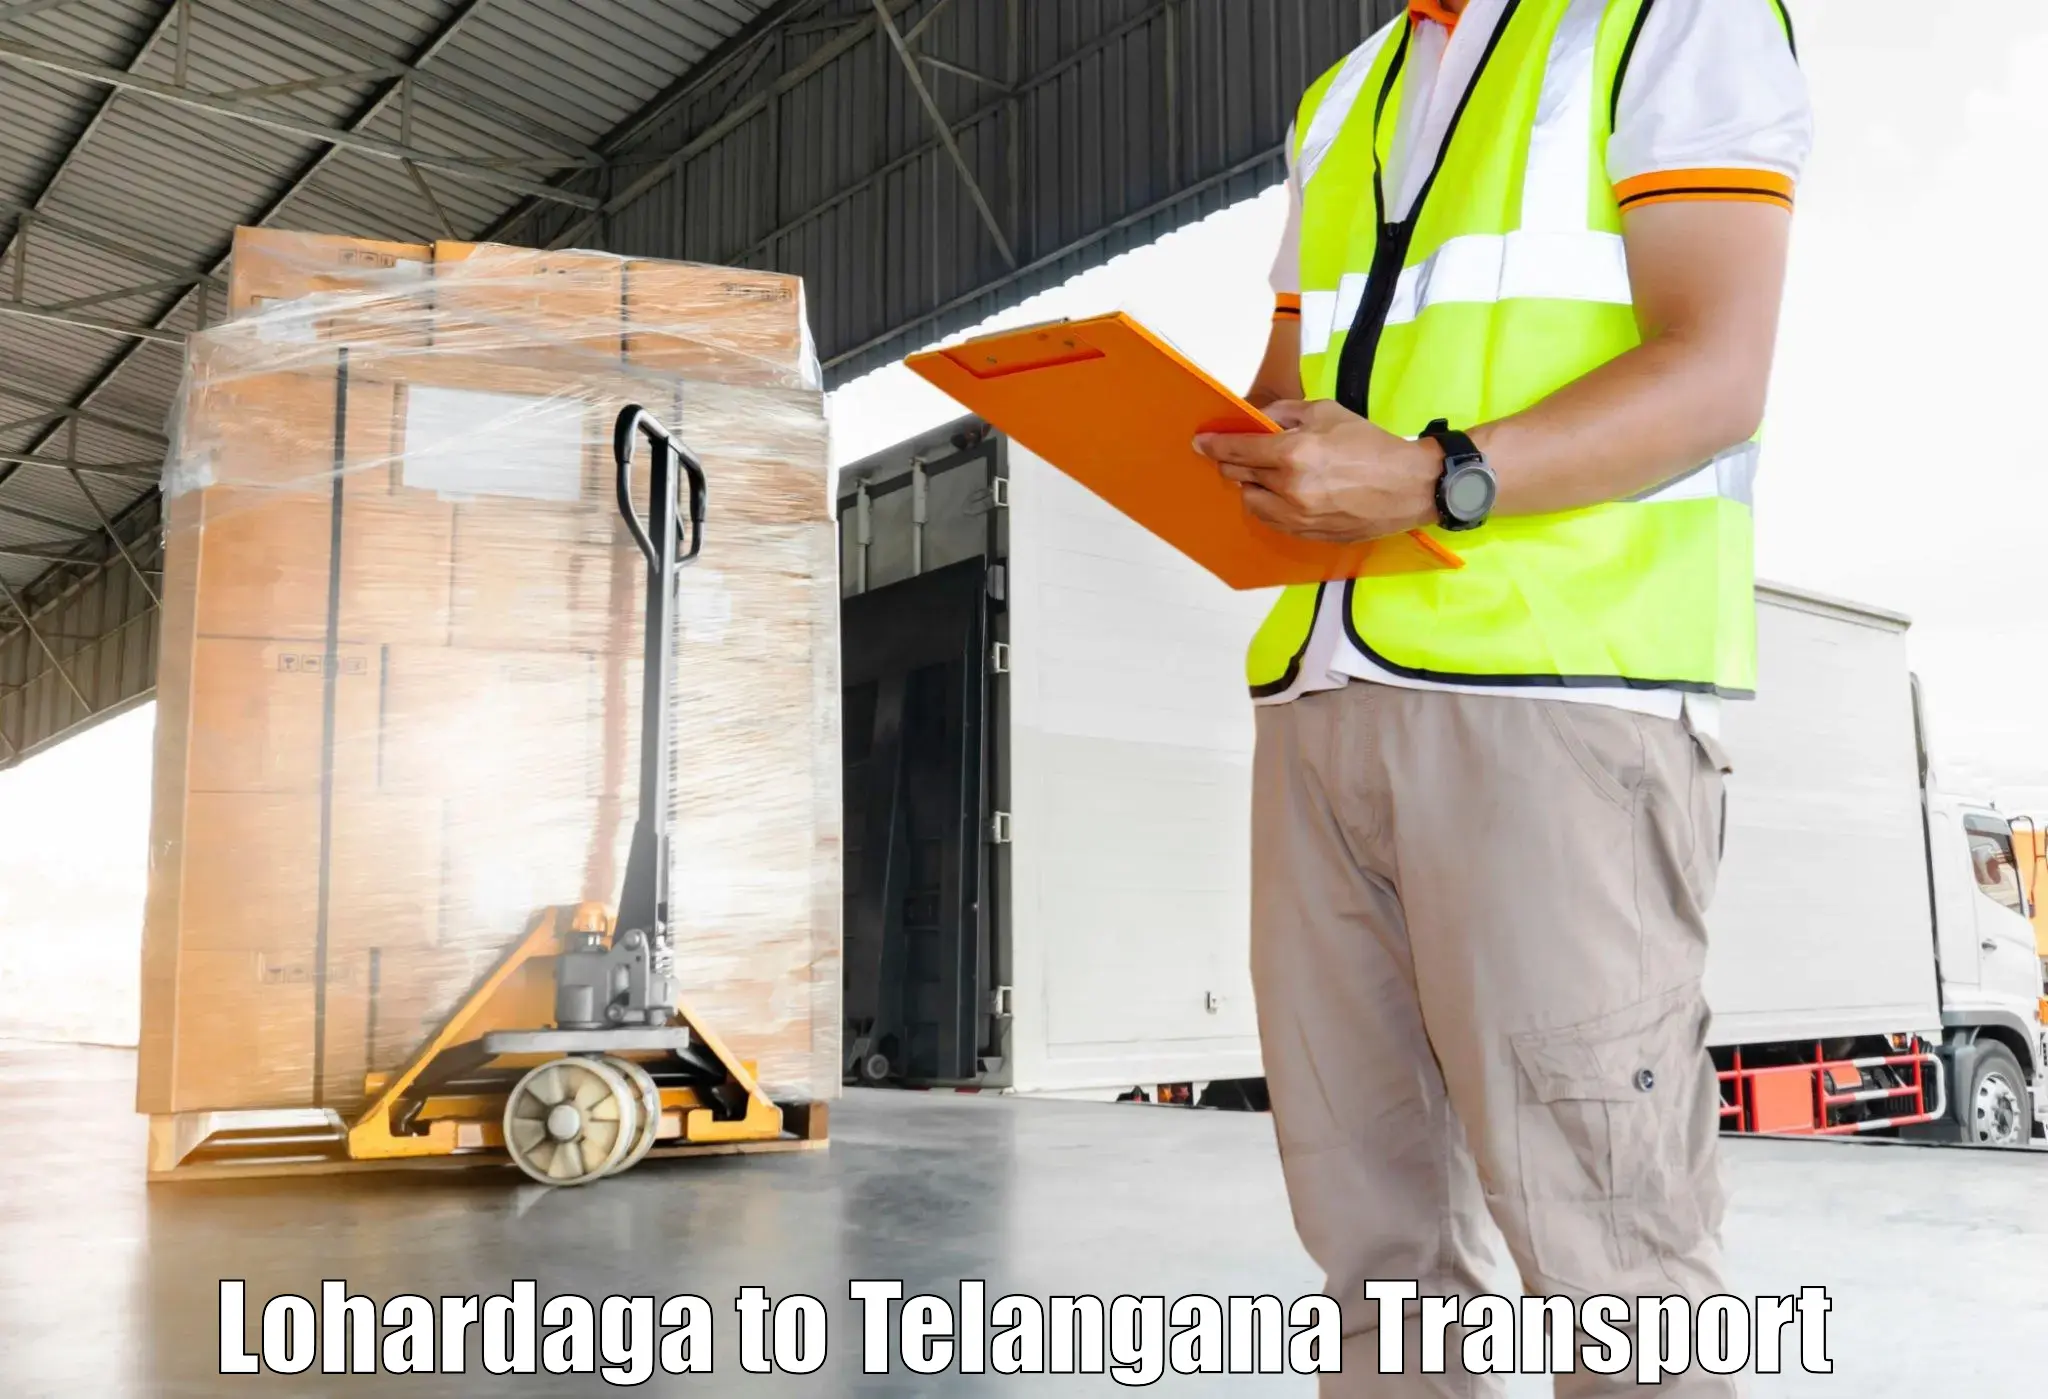 Lorry transport service in Lohardaga to Patancheru